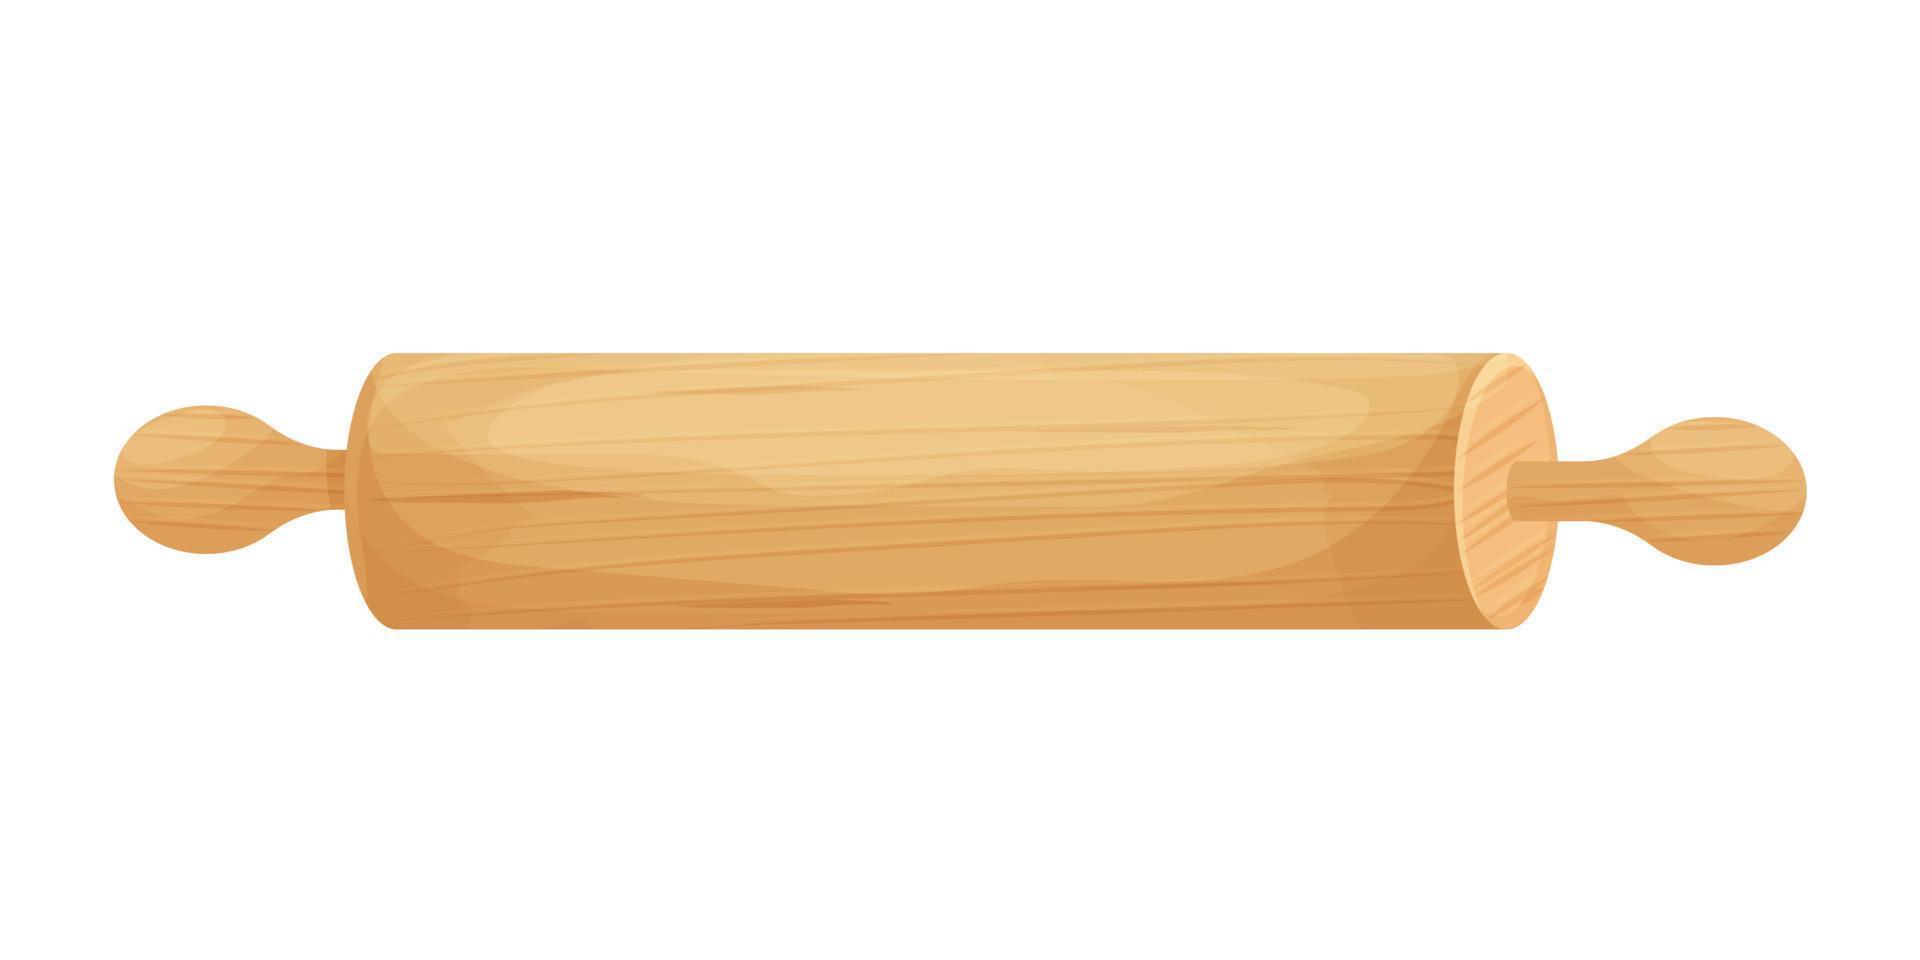 mattarello con struttura in legno in stile cartone animato isolato illustrazione su sfondo bianco. utensili tradizionali, attrezzatura da cucina. . illustrazione vettoriale